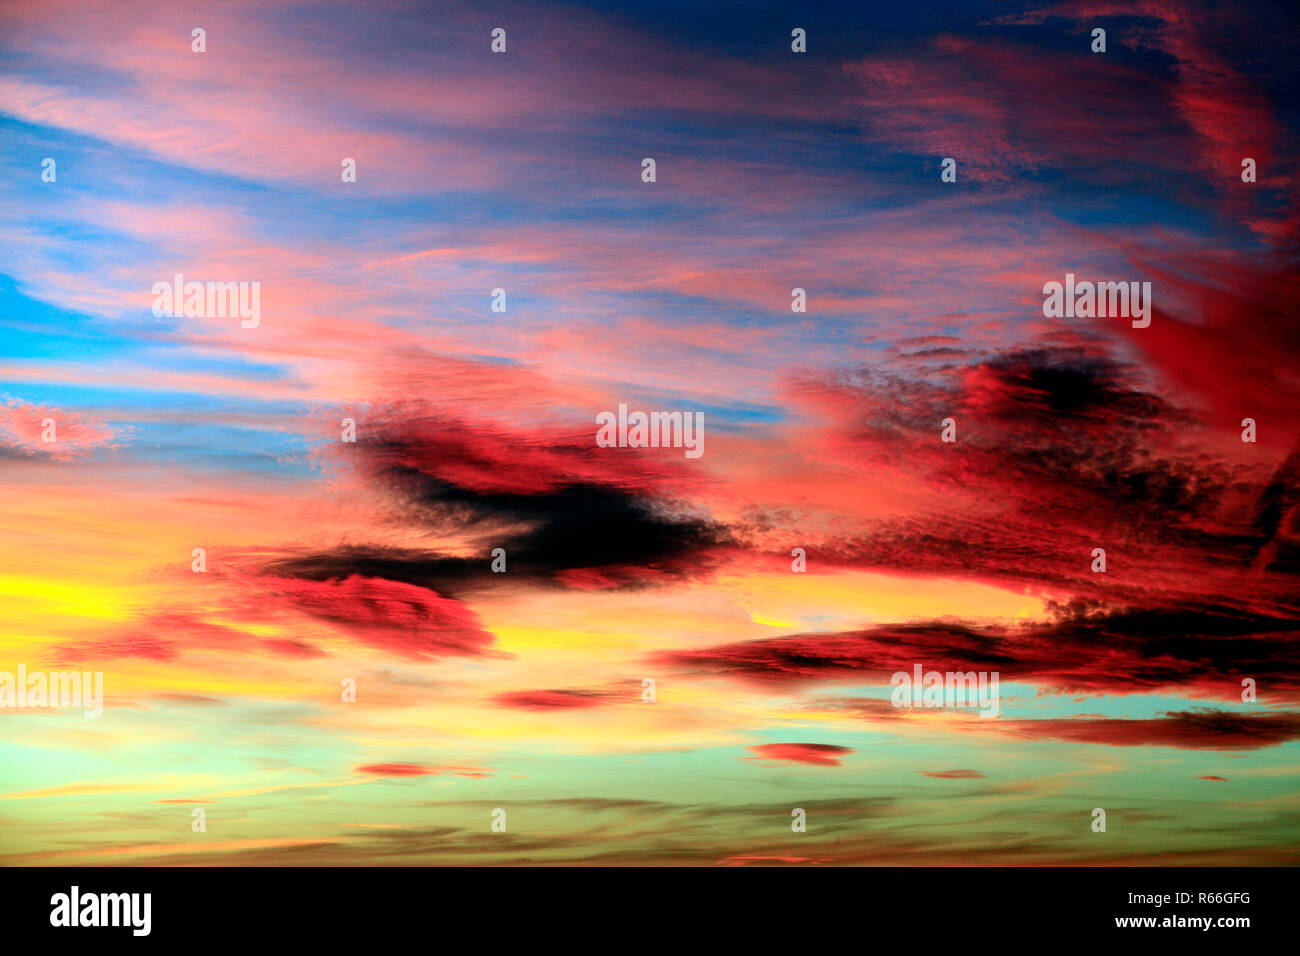 Rouge, rose, orange, jaune, bleu, ciel, nuage, nuages, lumière du soir, chaude, couleur, coloré, le ciel, formation, formations, dramatique, England, UK Banque D'Images